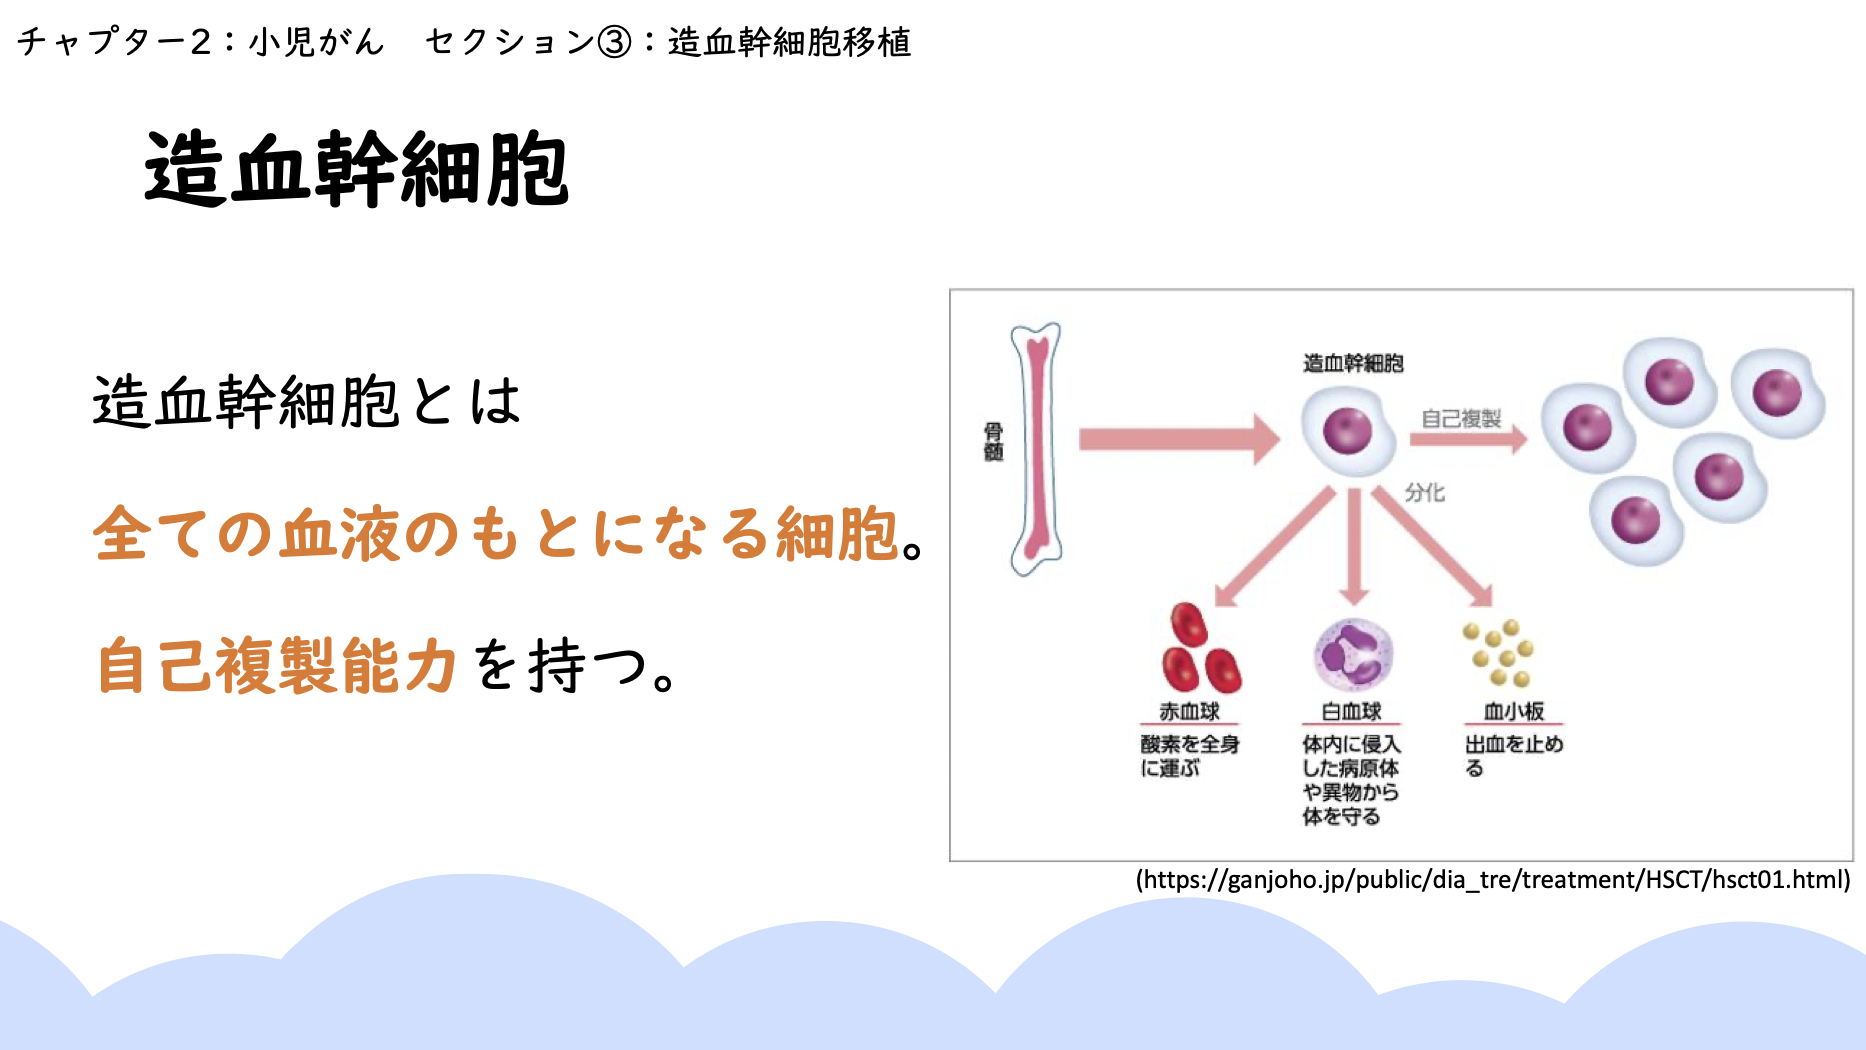 チャプター9-6:No.6:造血幹細胞移植